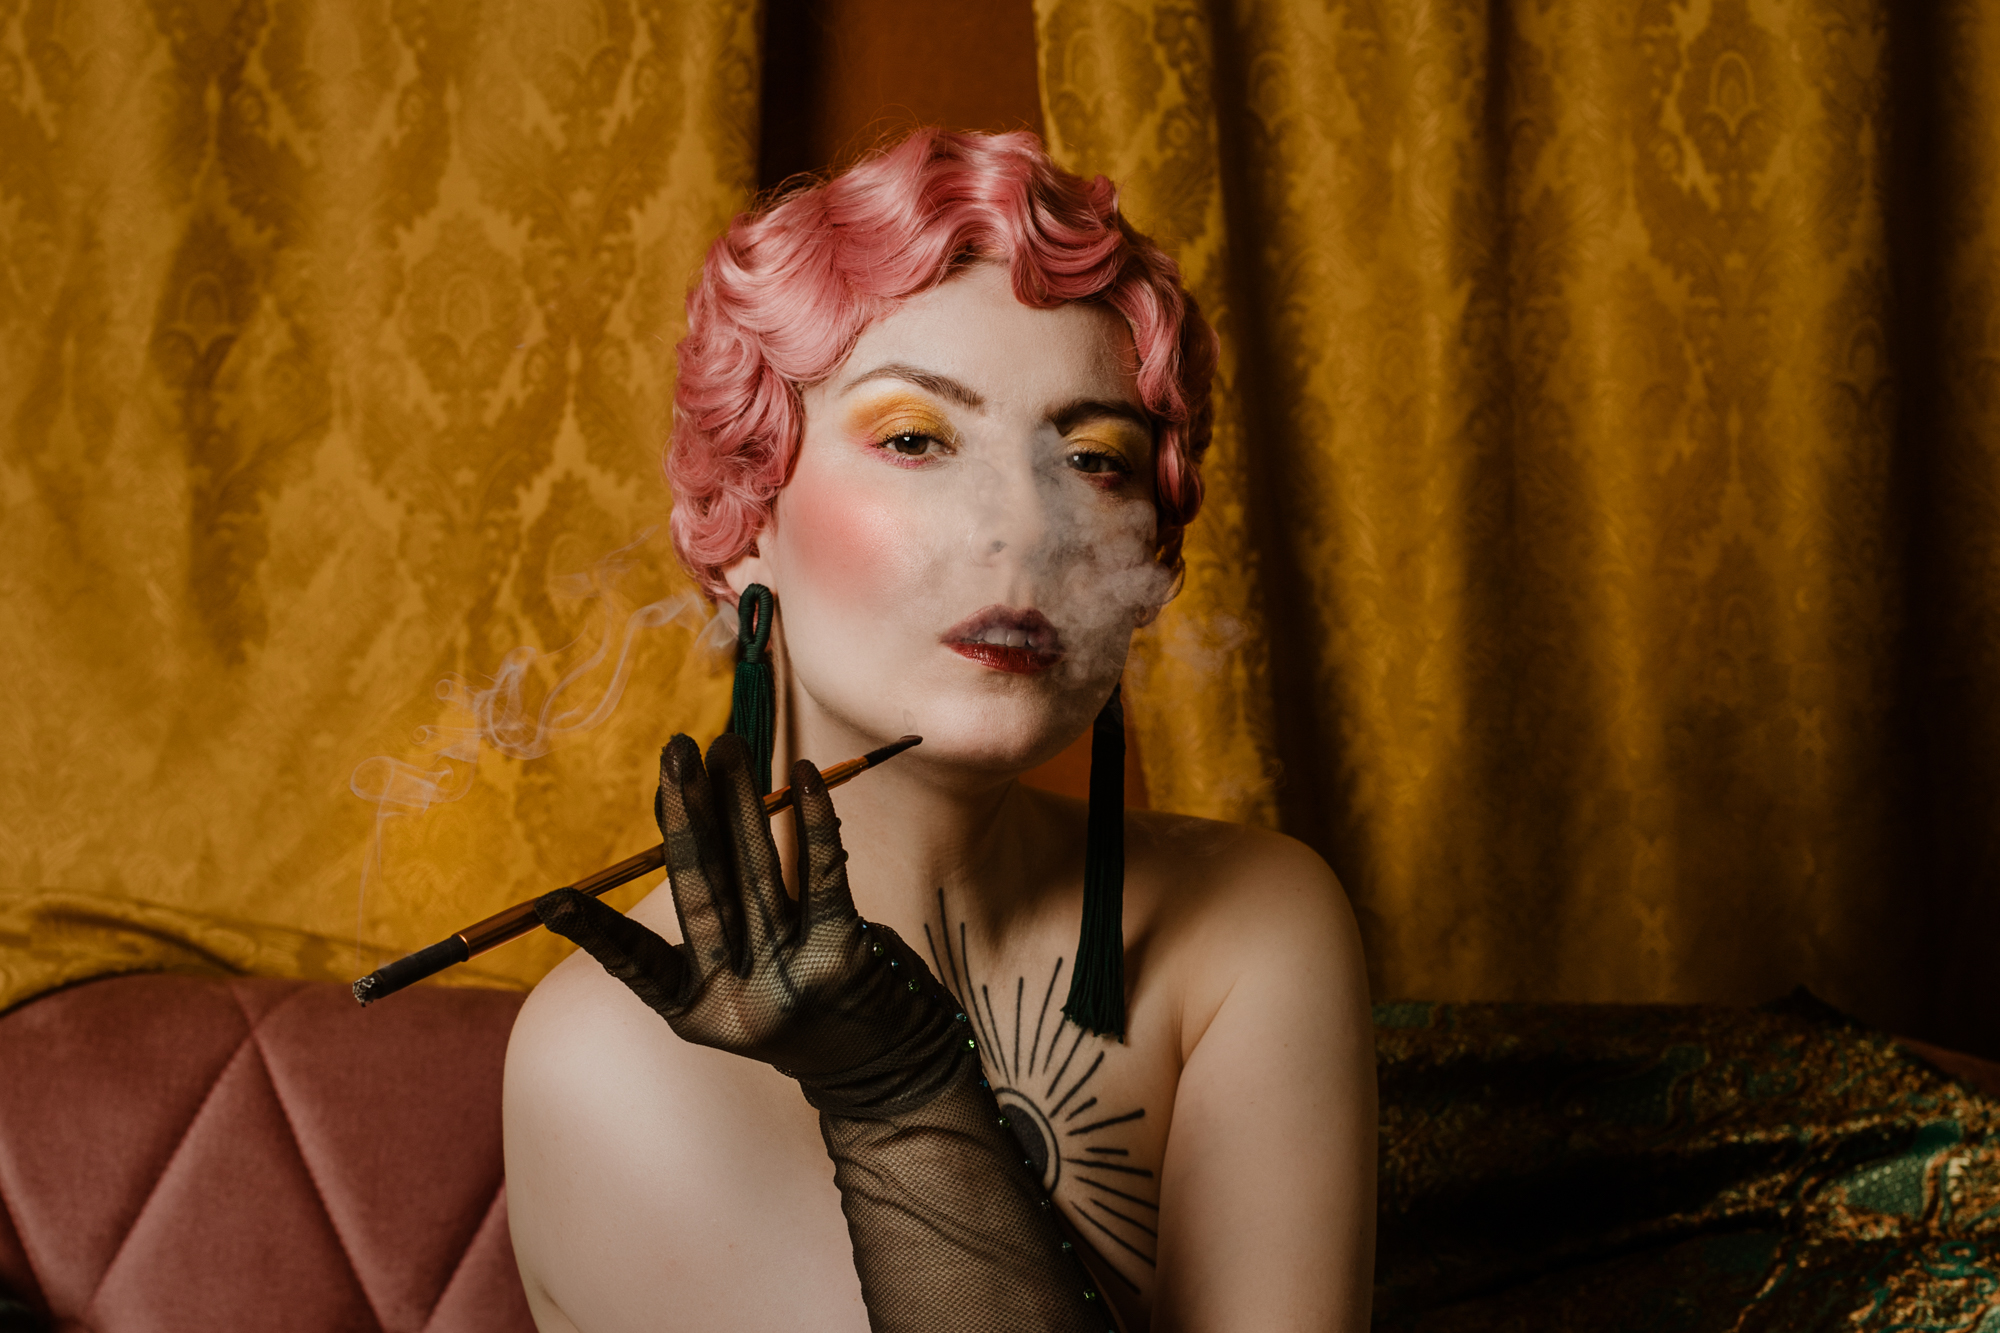 Kobieta z różowymi włosami w stylu lat 20. pali papierosa z fifką. Ma czarne rękawiczki.